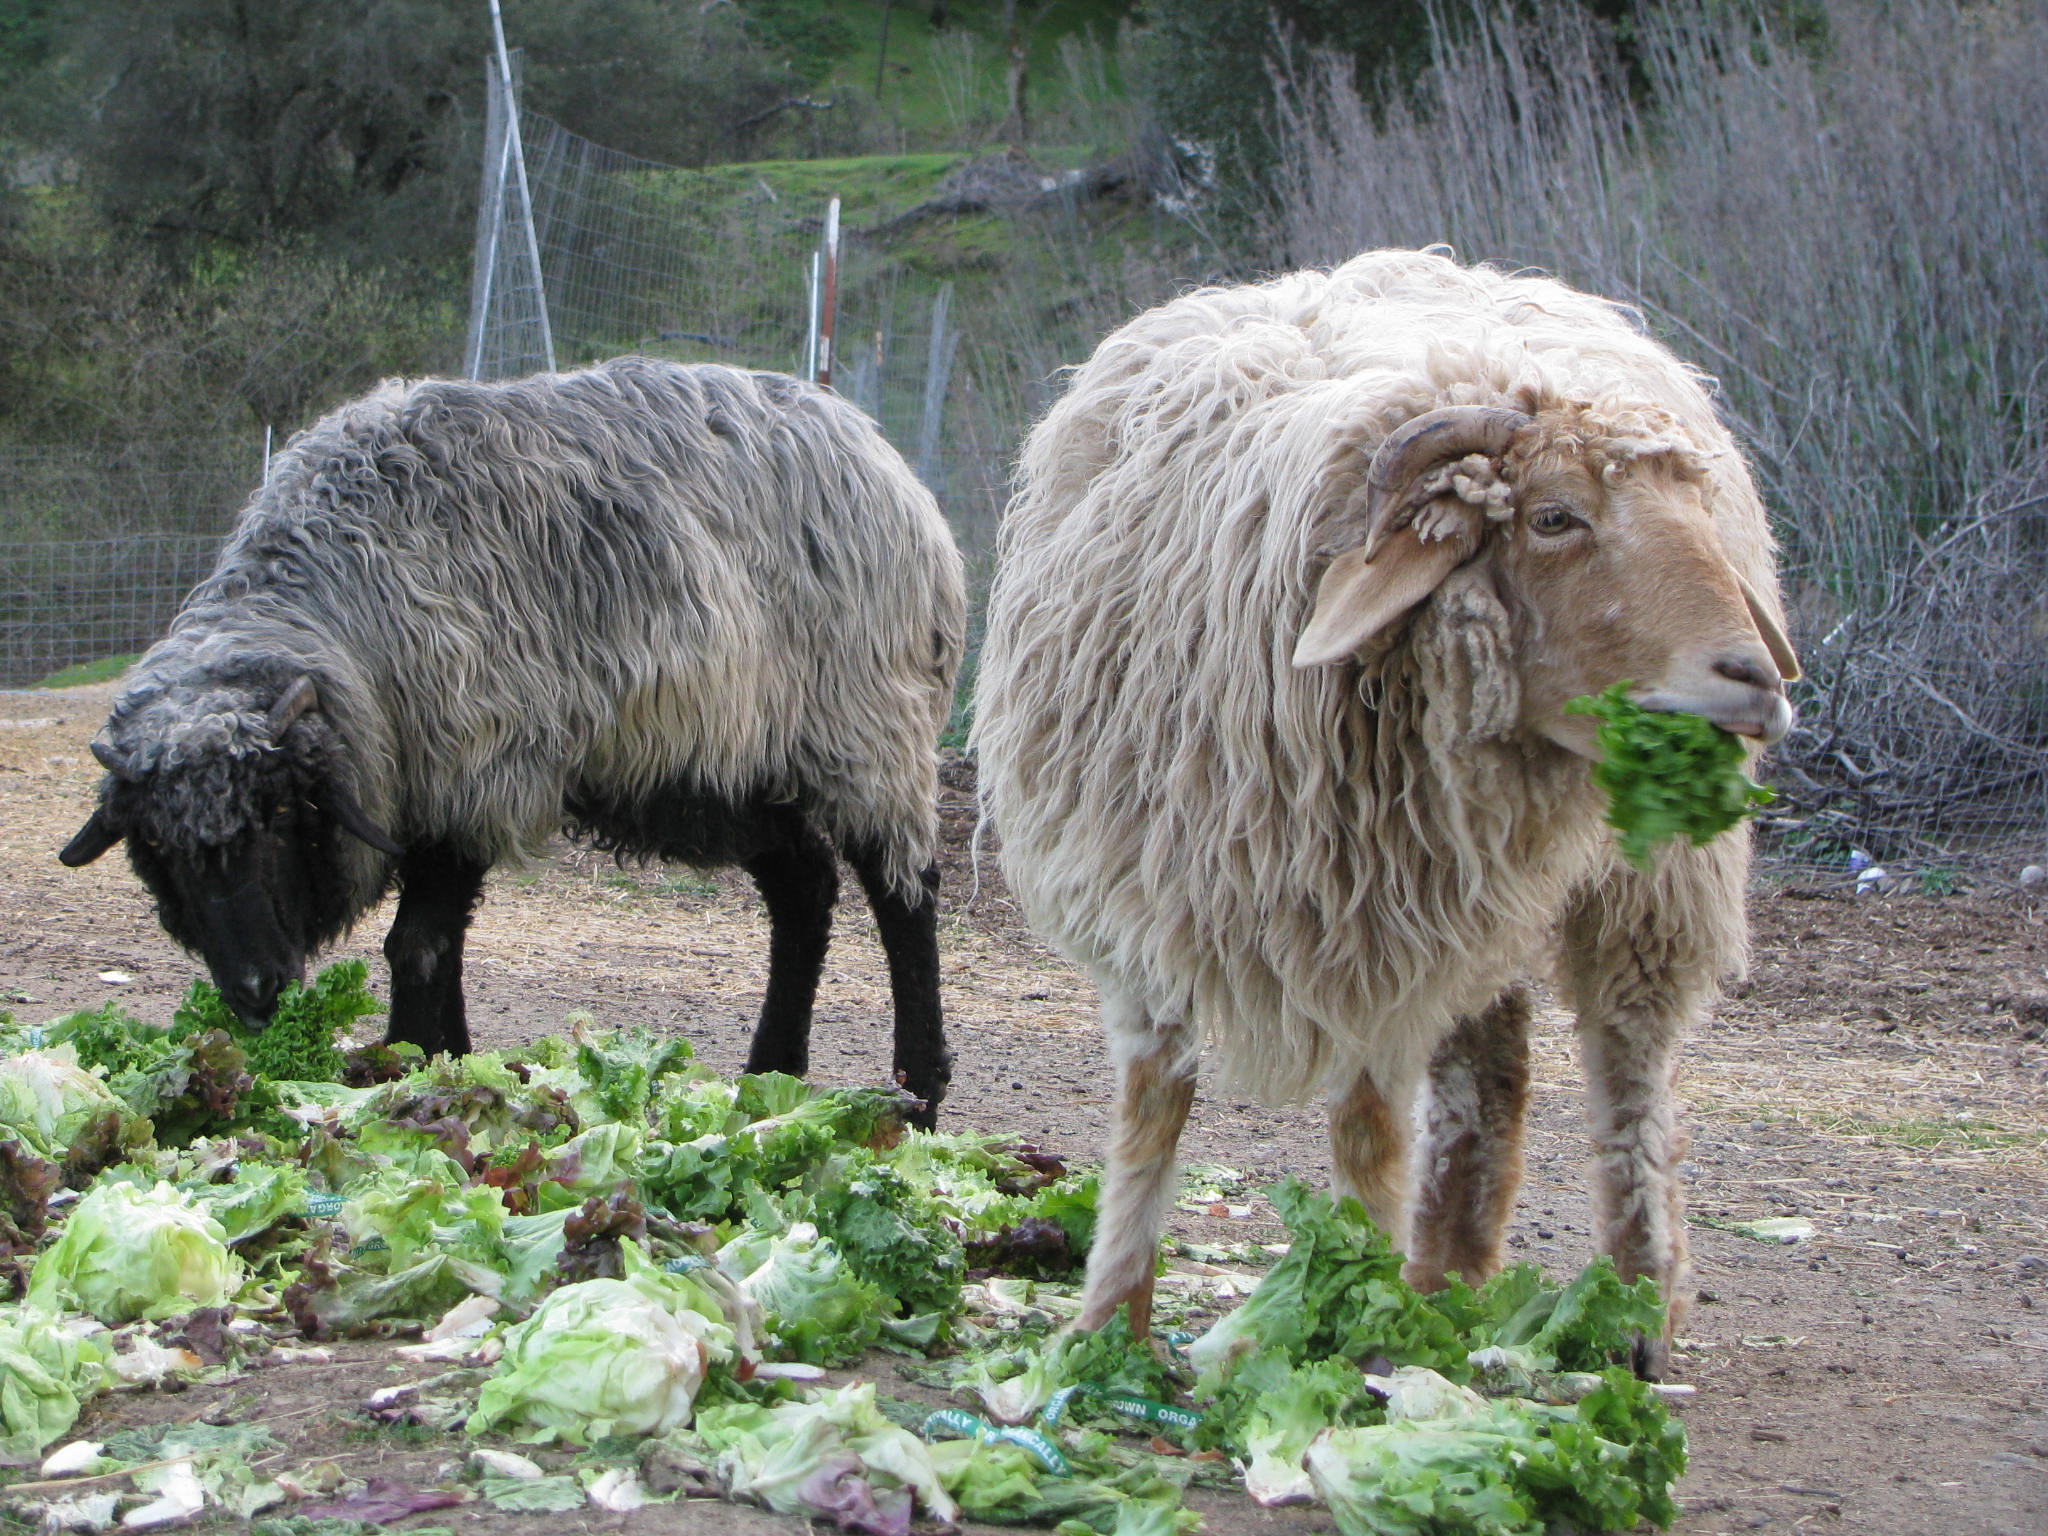 sheep eating lettuce